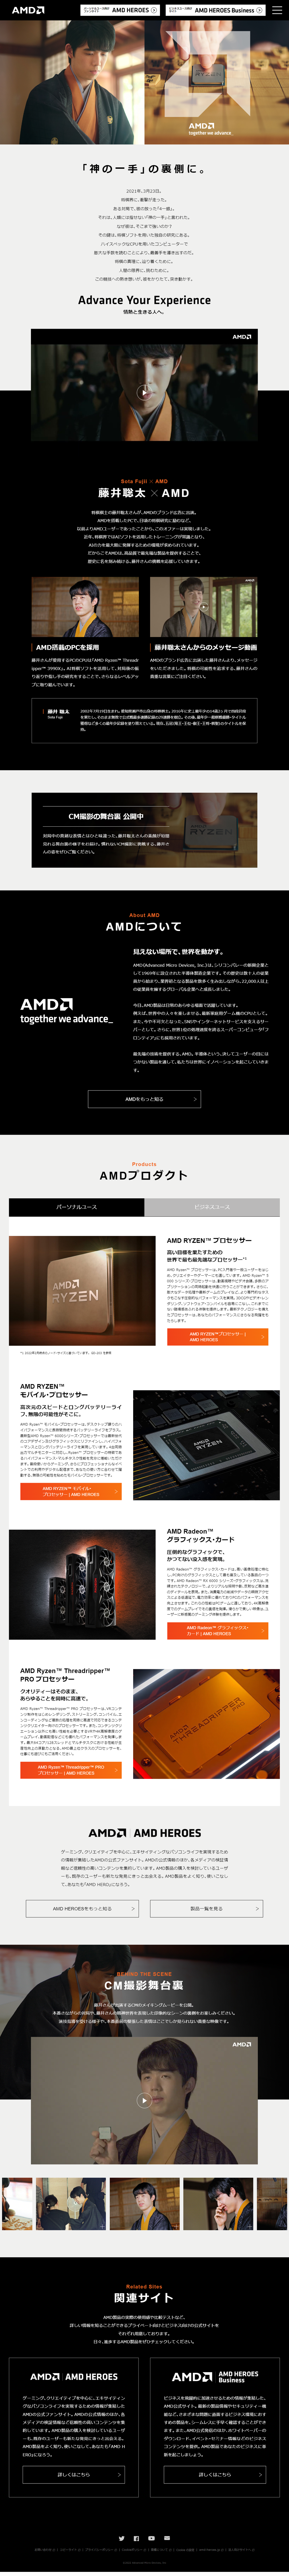 AMD×藤井聡太_pc_1